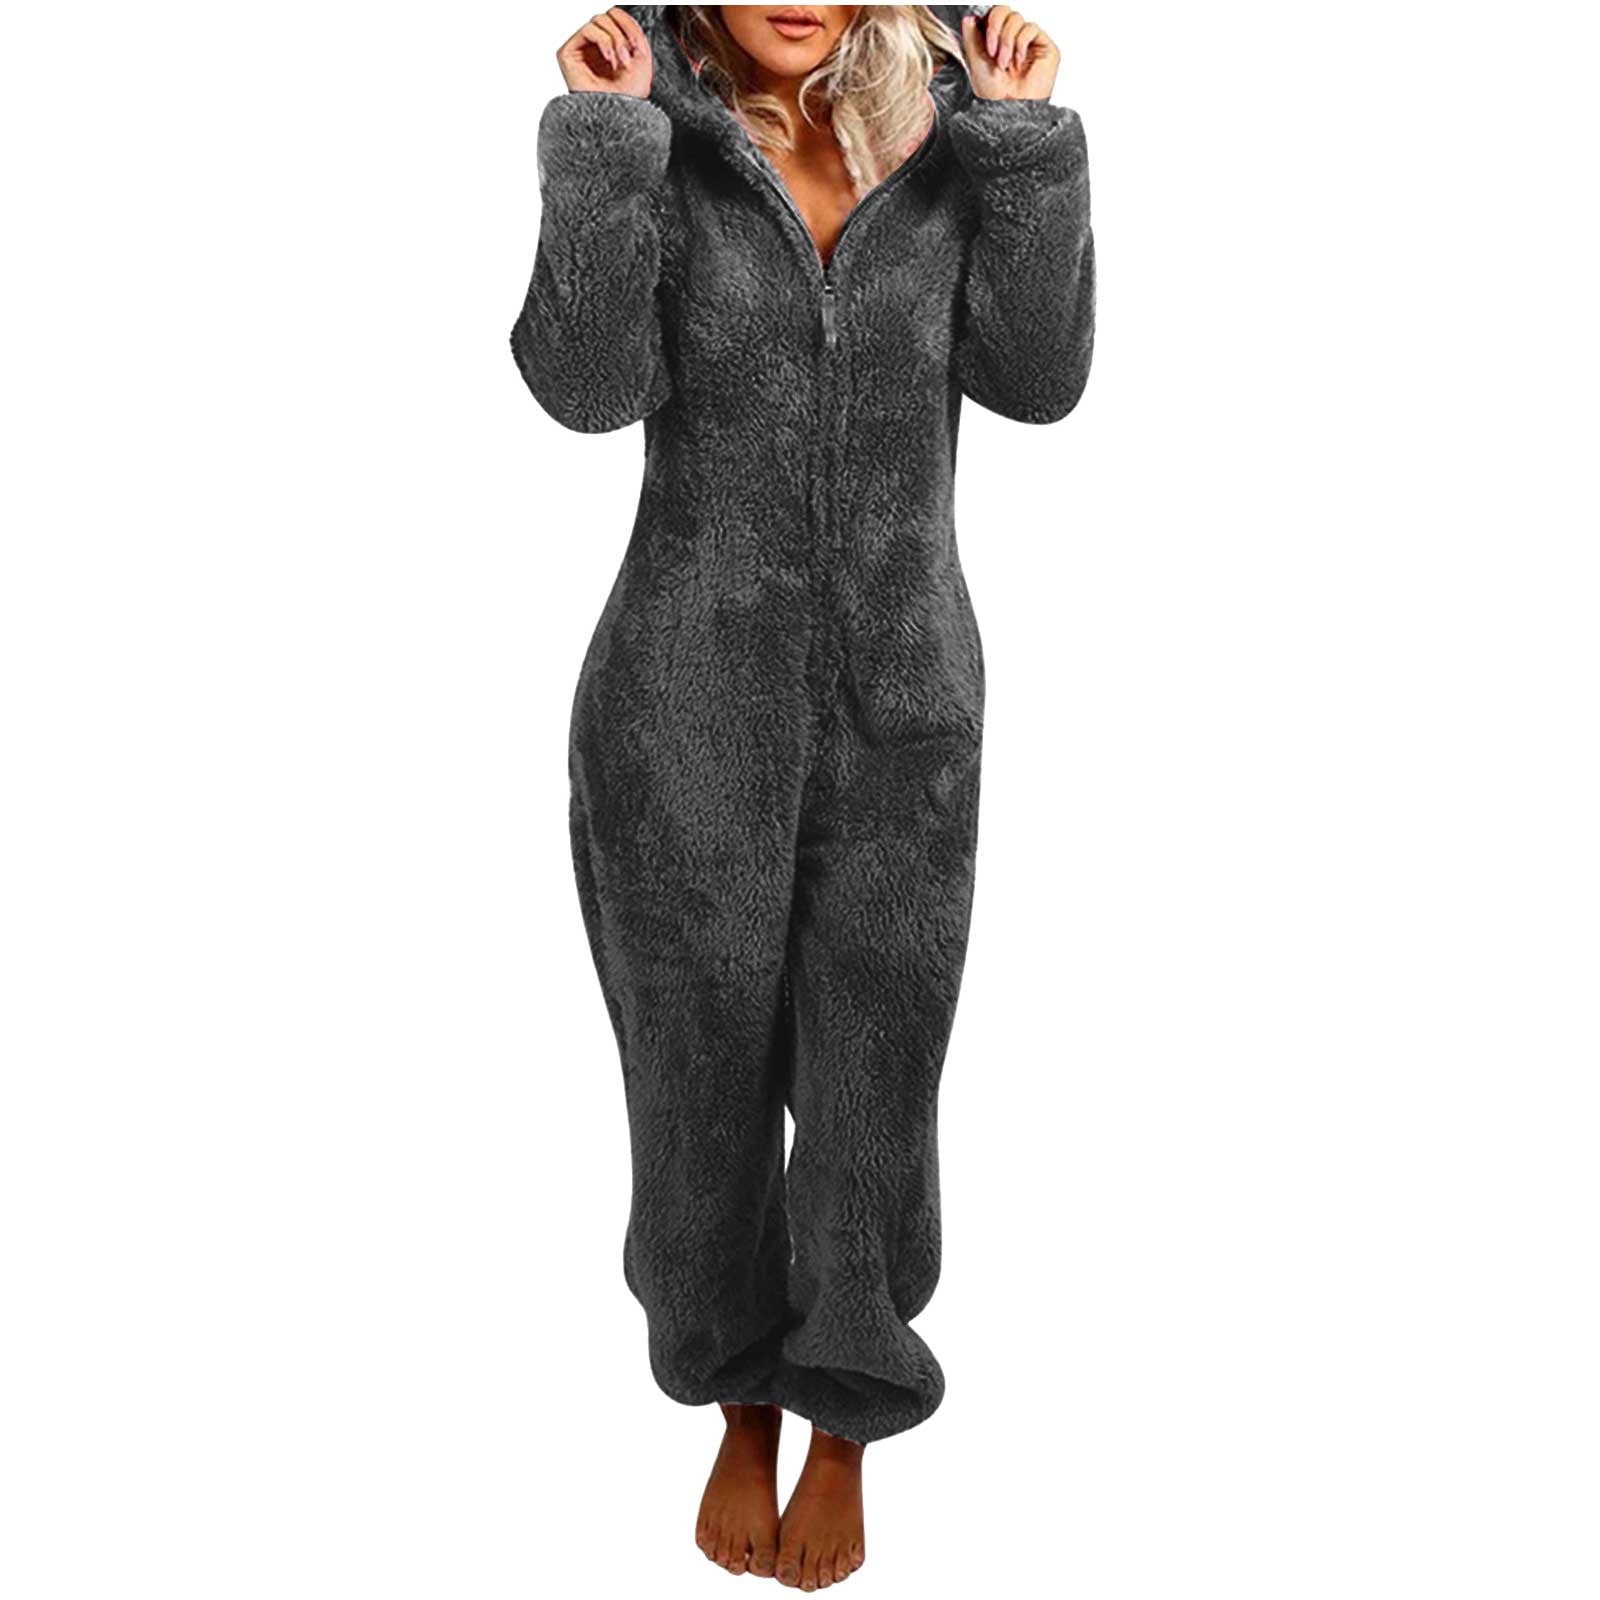 jsaierl Women Onesies Fluffy Fleece Jumpsuits Sleepwear Plus Size Hood ...